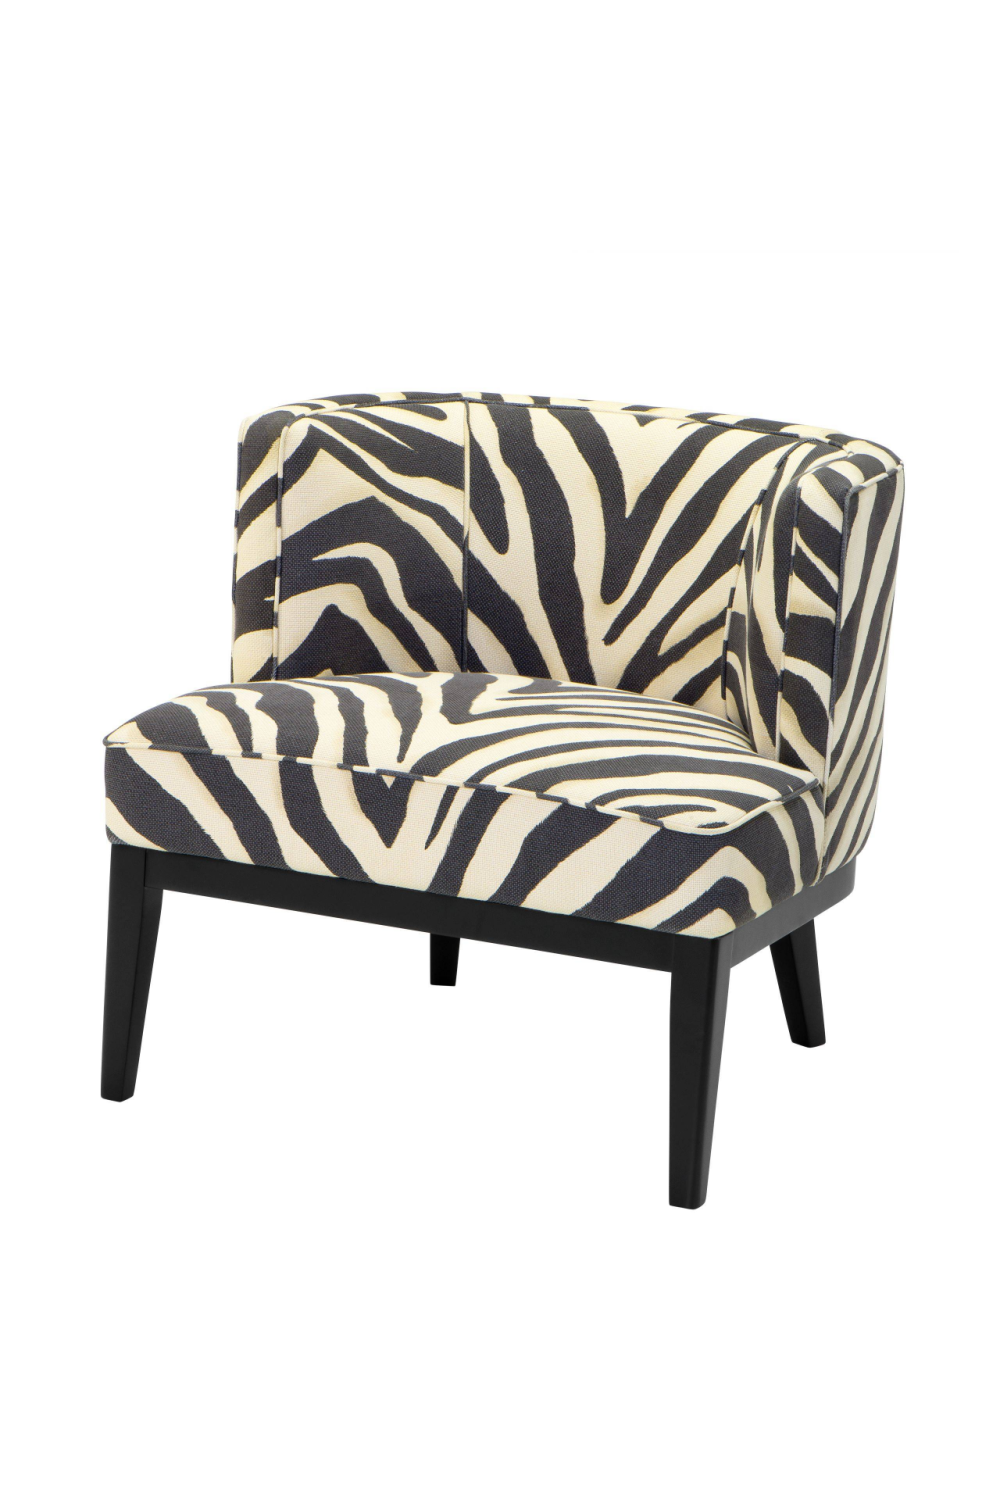 Zebra Print Accent Chair | Eichholtz Baldessari | Oroa.com